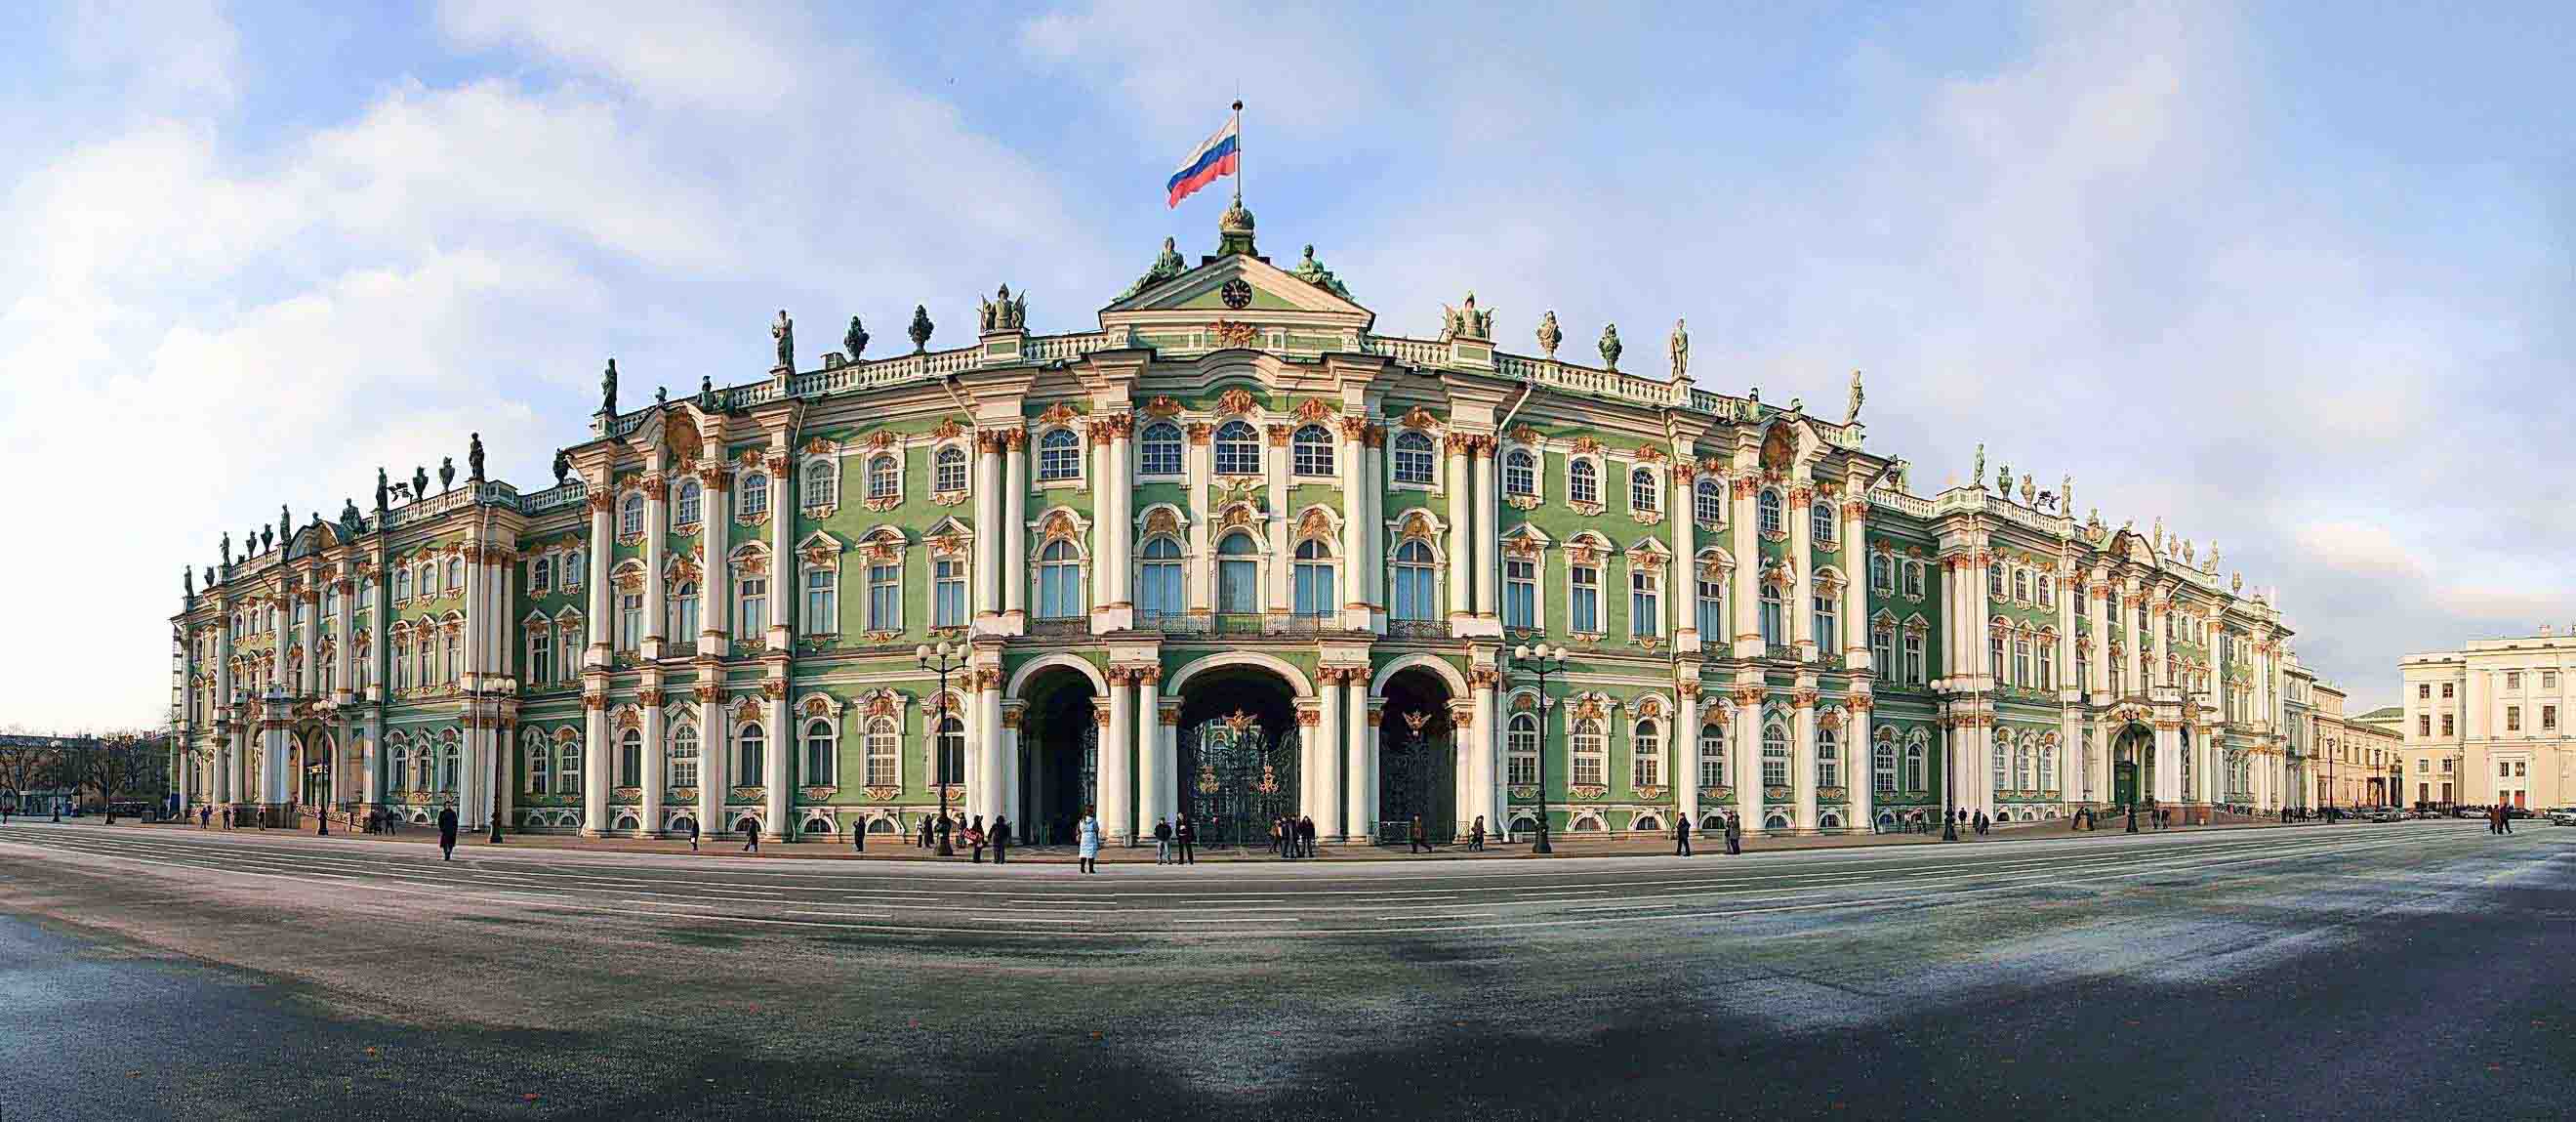 Hermitage Museum in Saint Petersburg, Russia